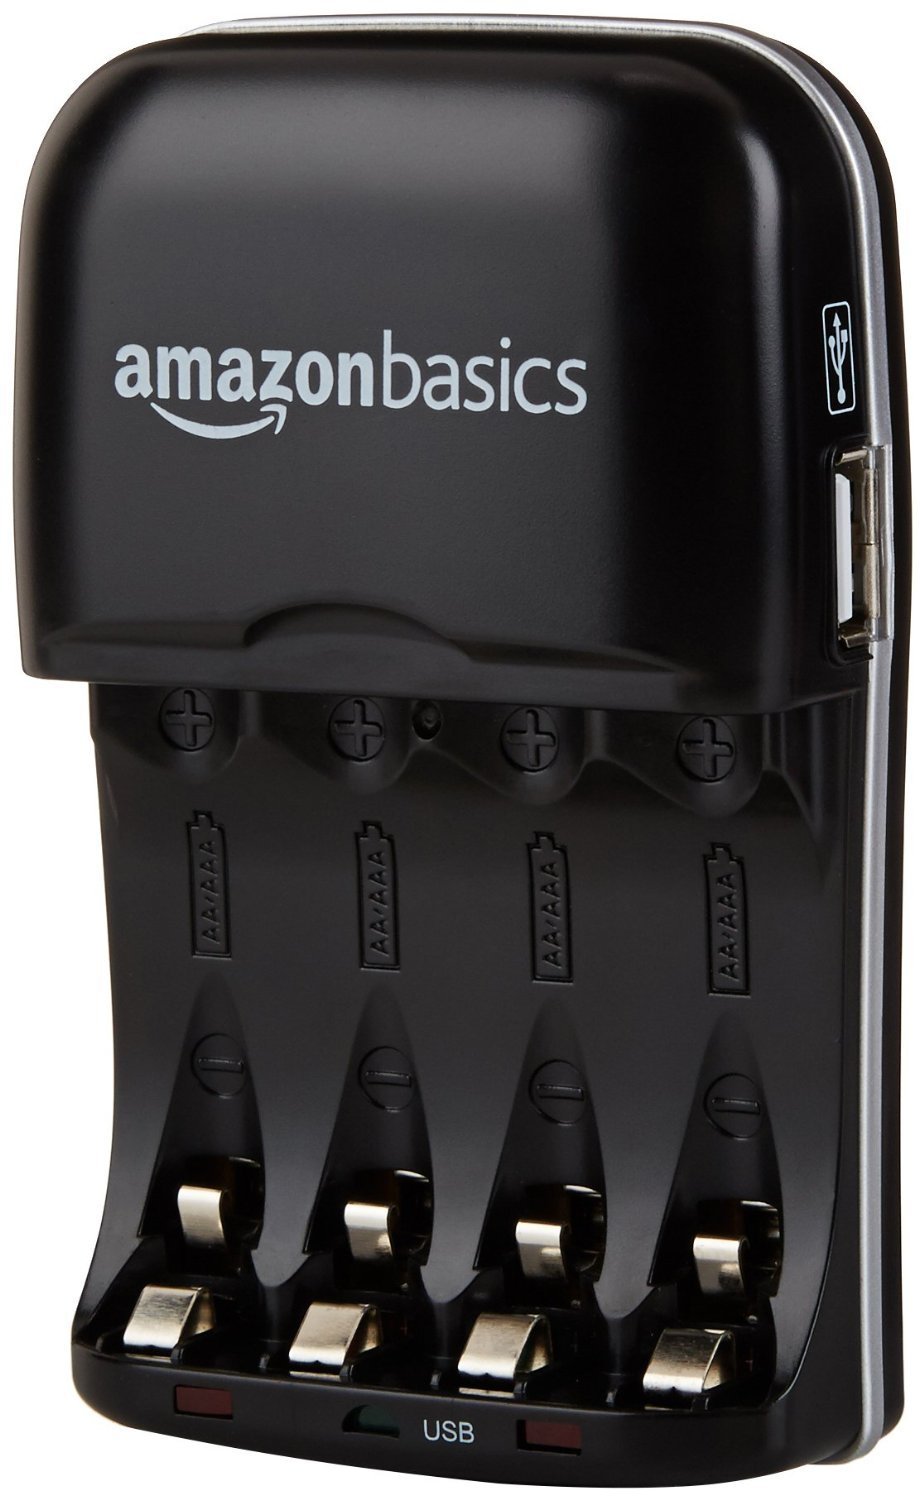 Amazon Basics battery charger